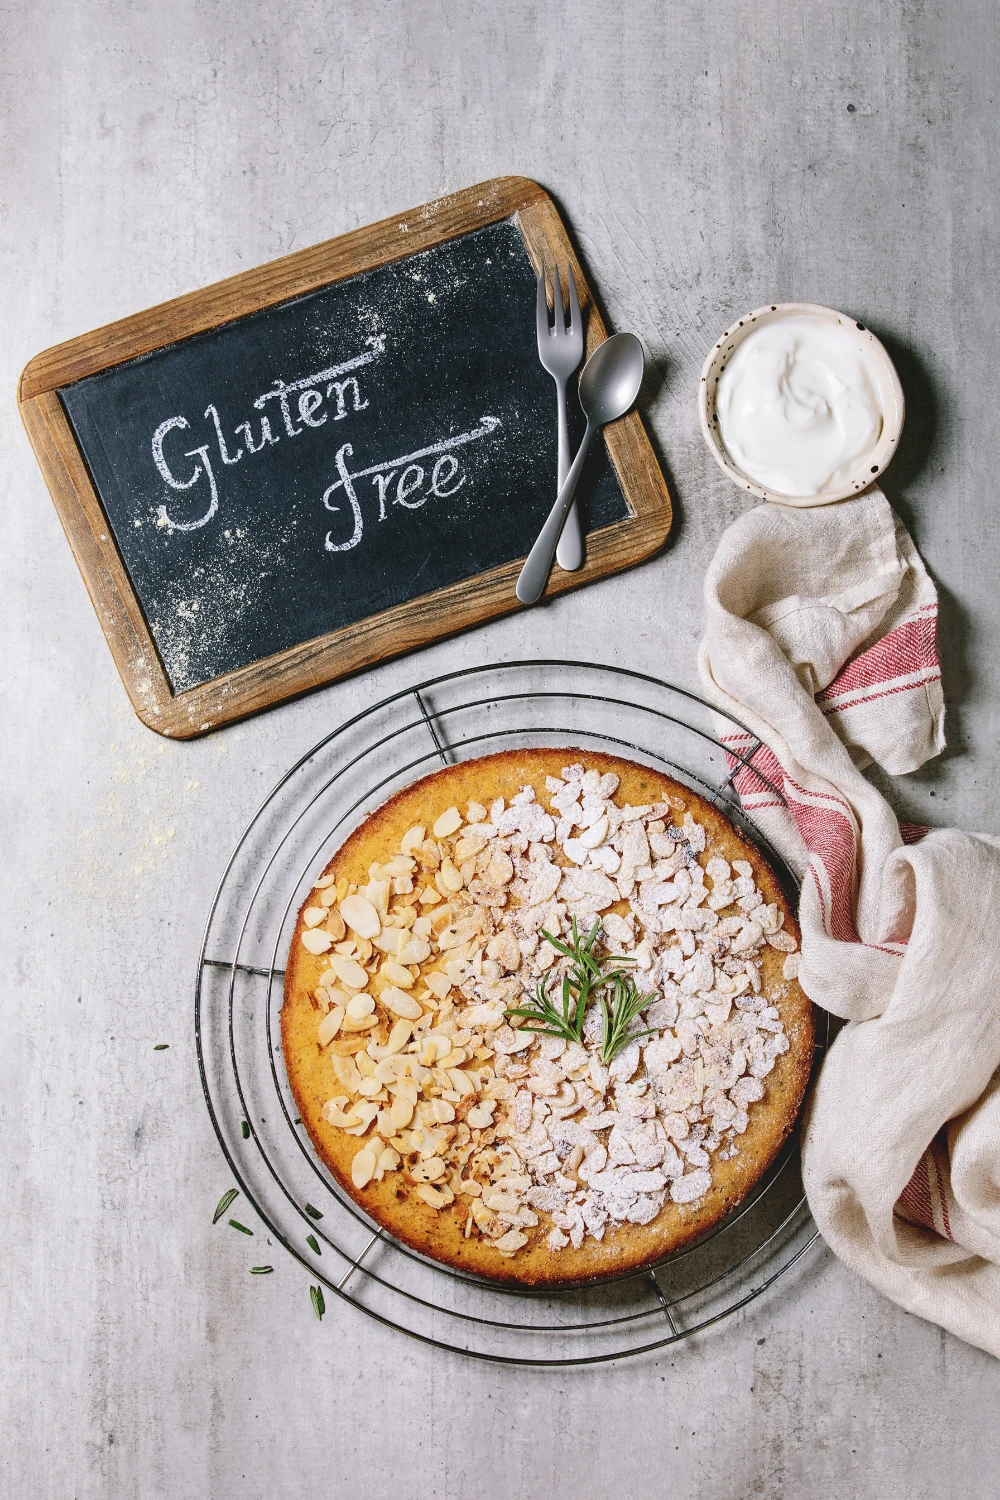 gluten and gliadin free grains clipart